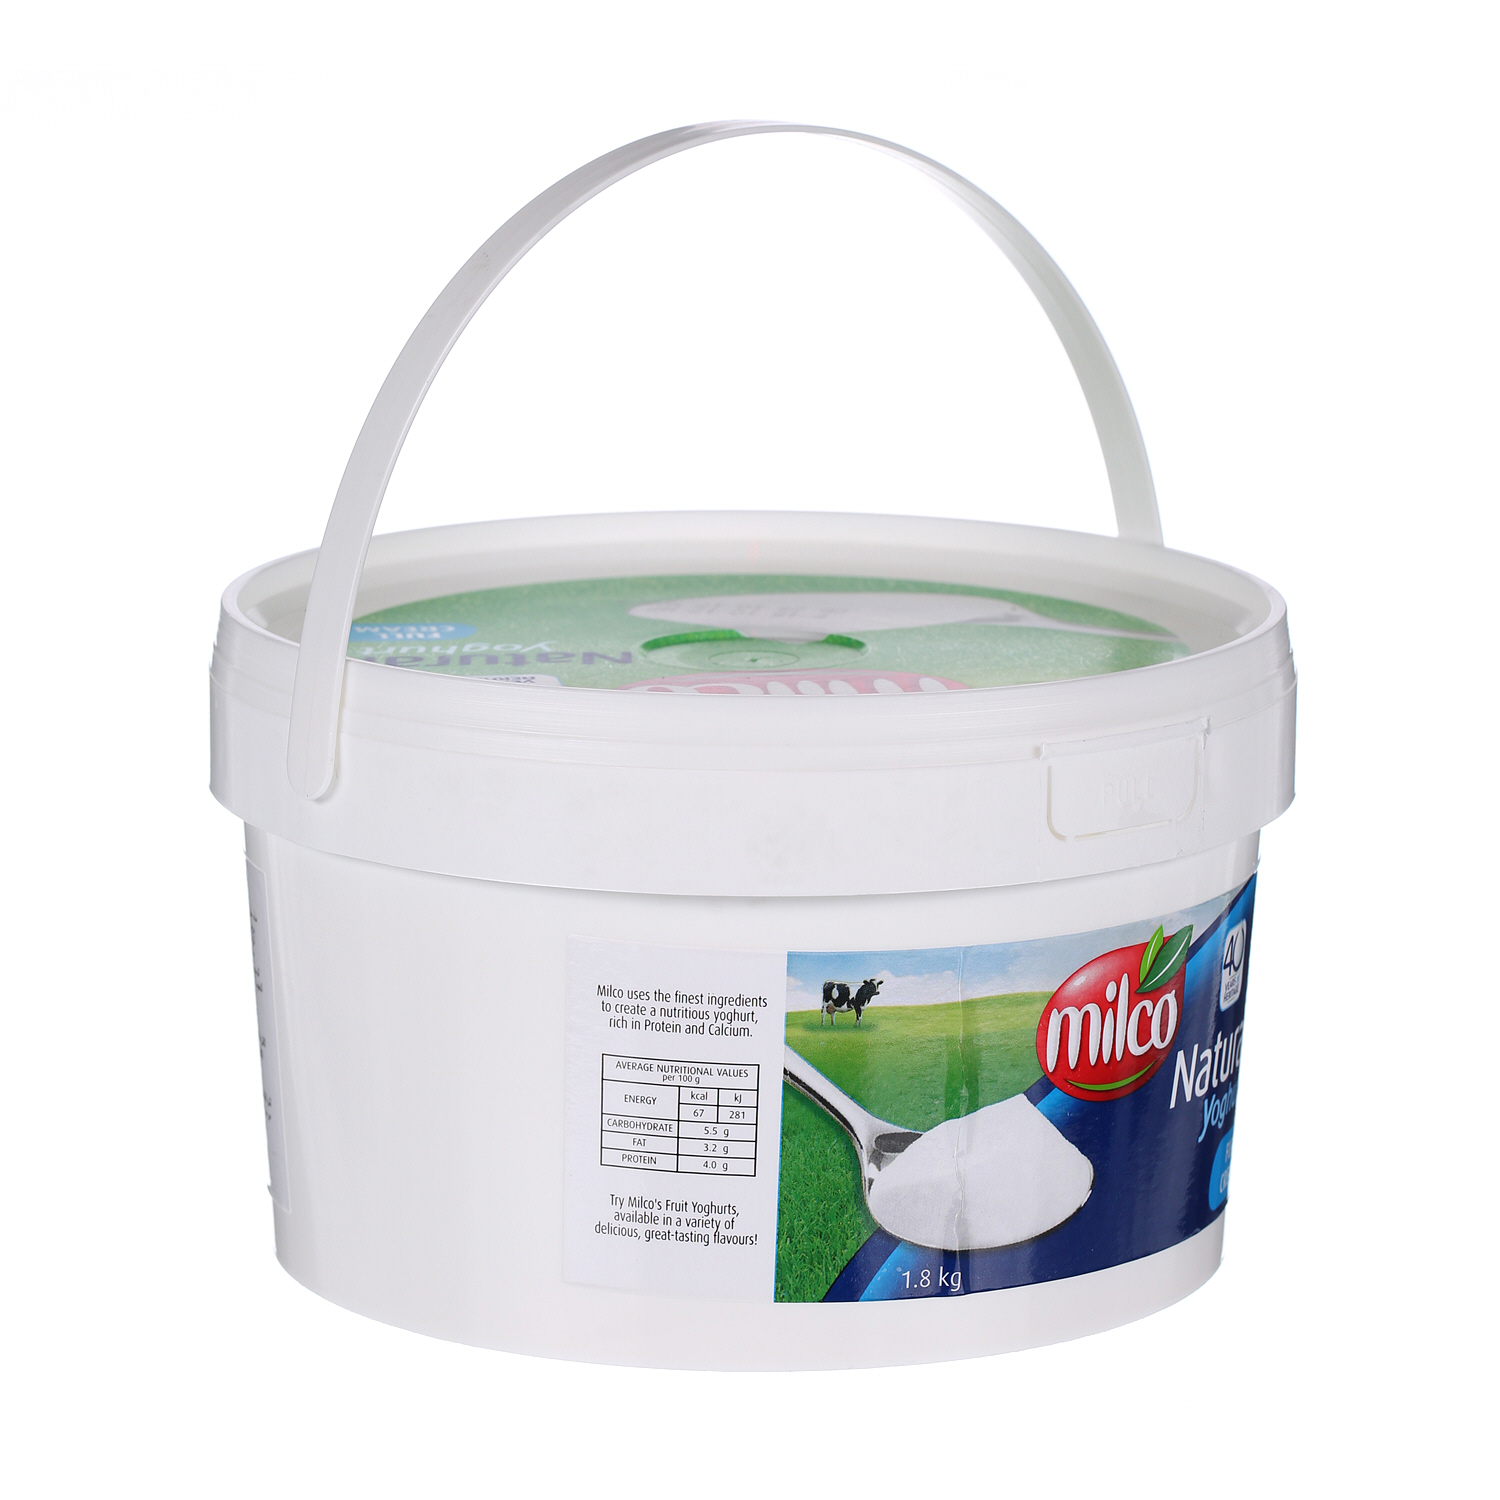 Milco Fresh Yoghurt Full Cream 1.8 Kg